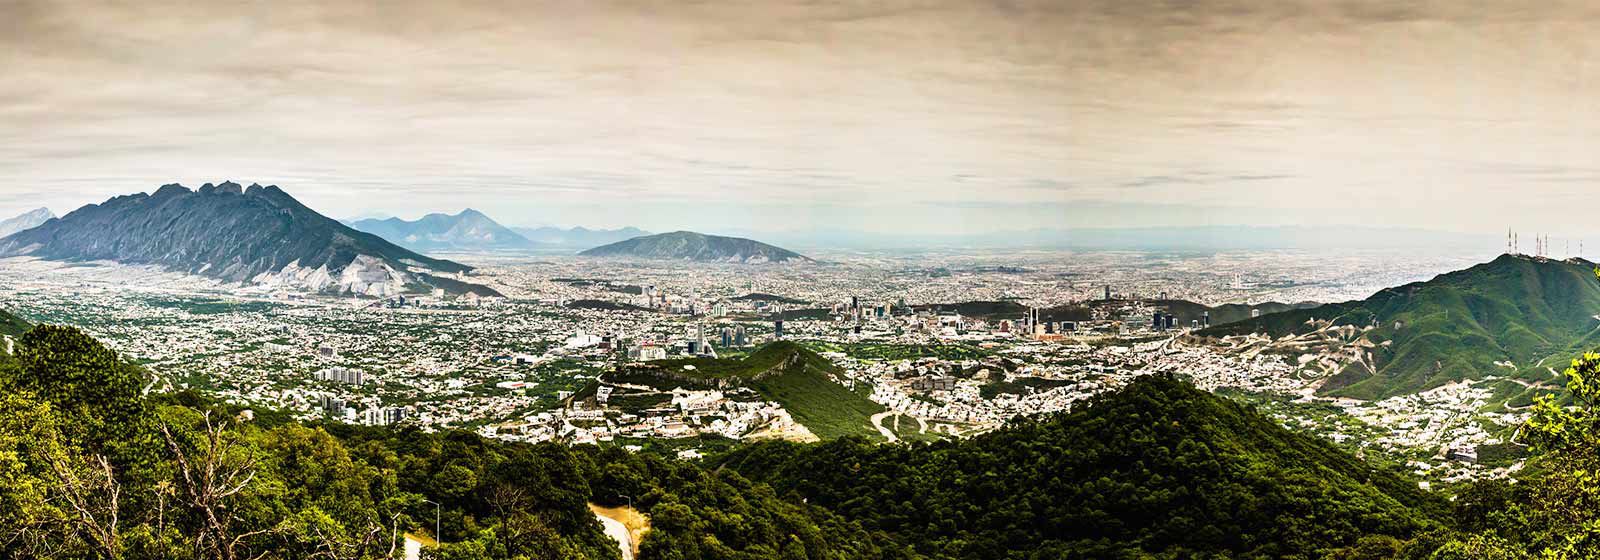 Mountain valley view of Monterrey Mexico